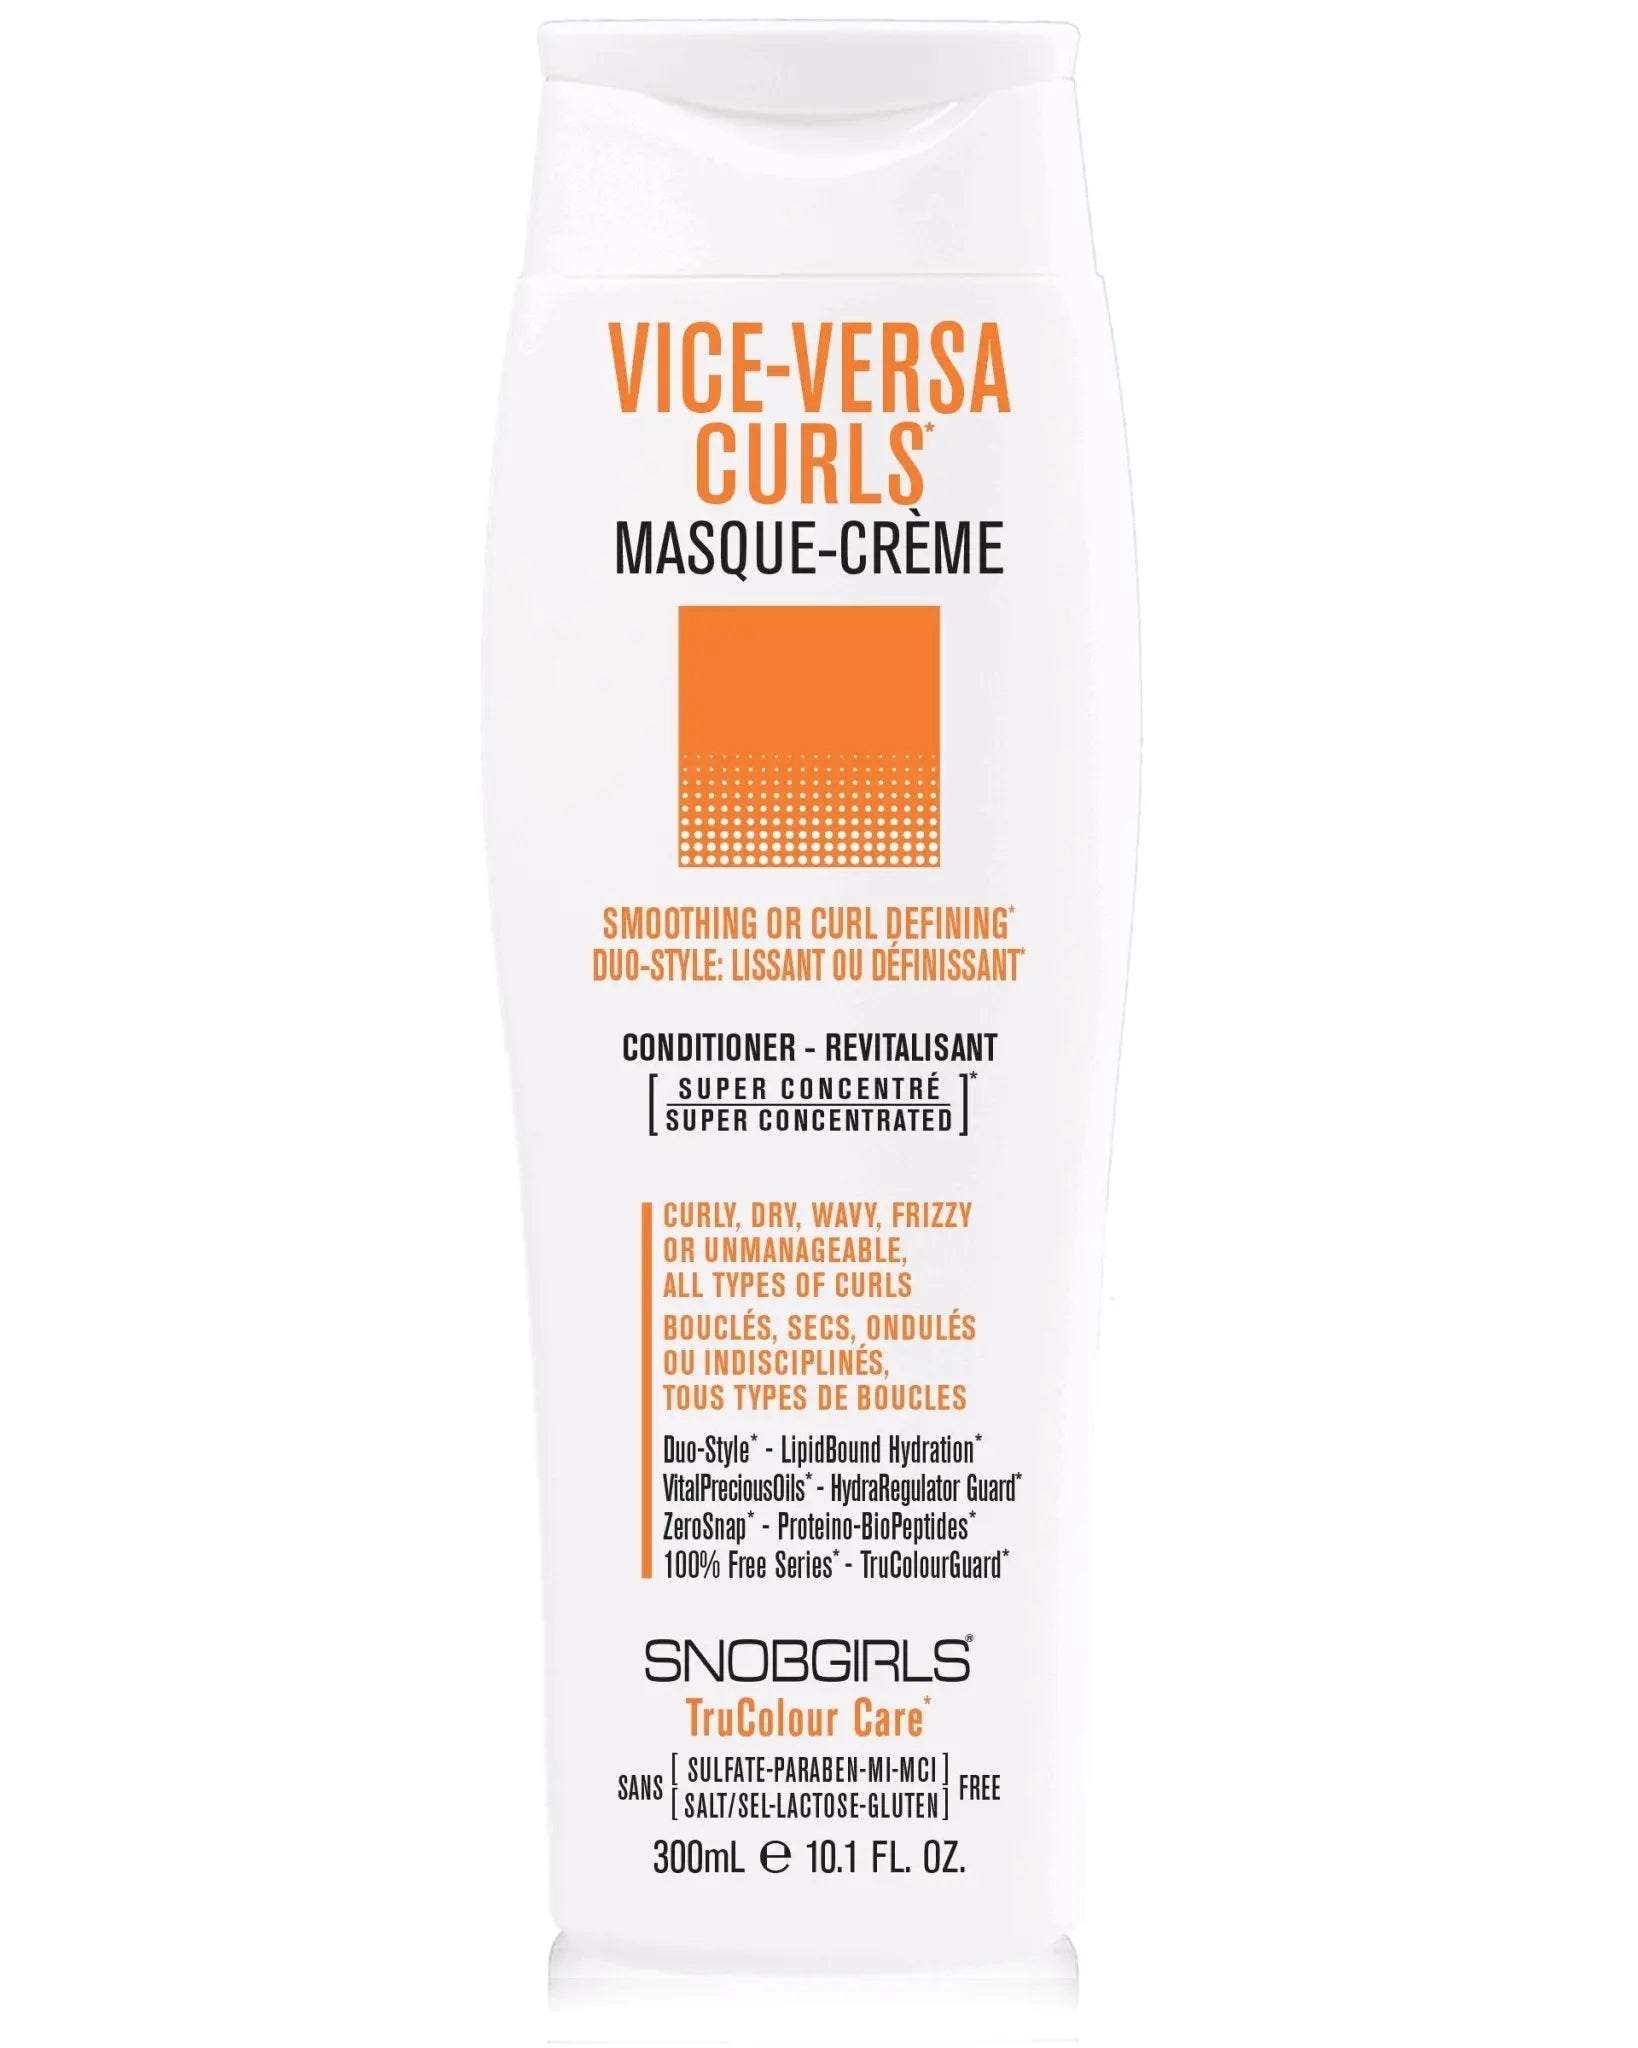 VICE-VERSA CURLS Masque-Creme (conditioner) 10.1 FL. OZ. - SNOBGIRLS.com